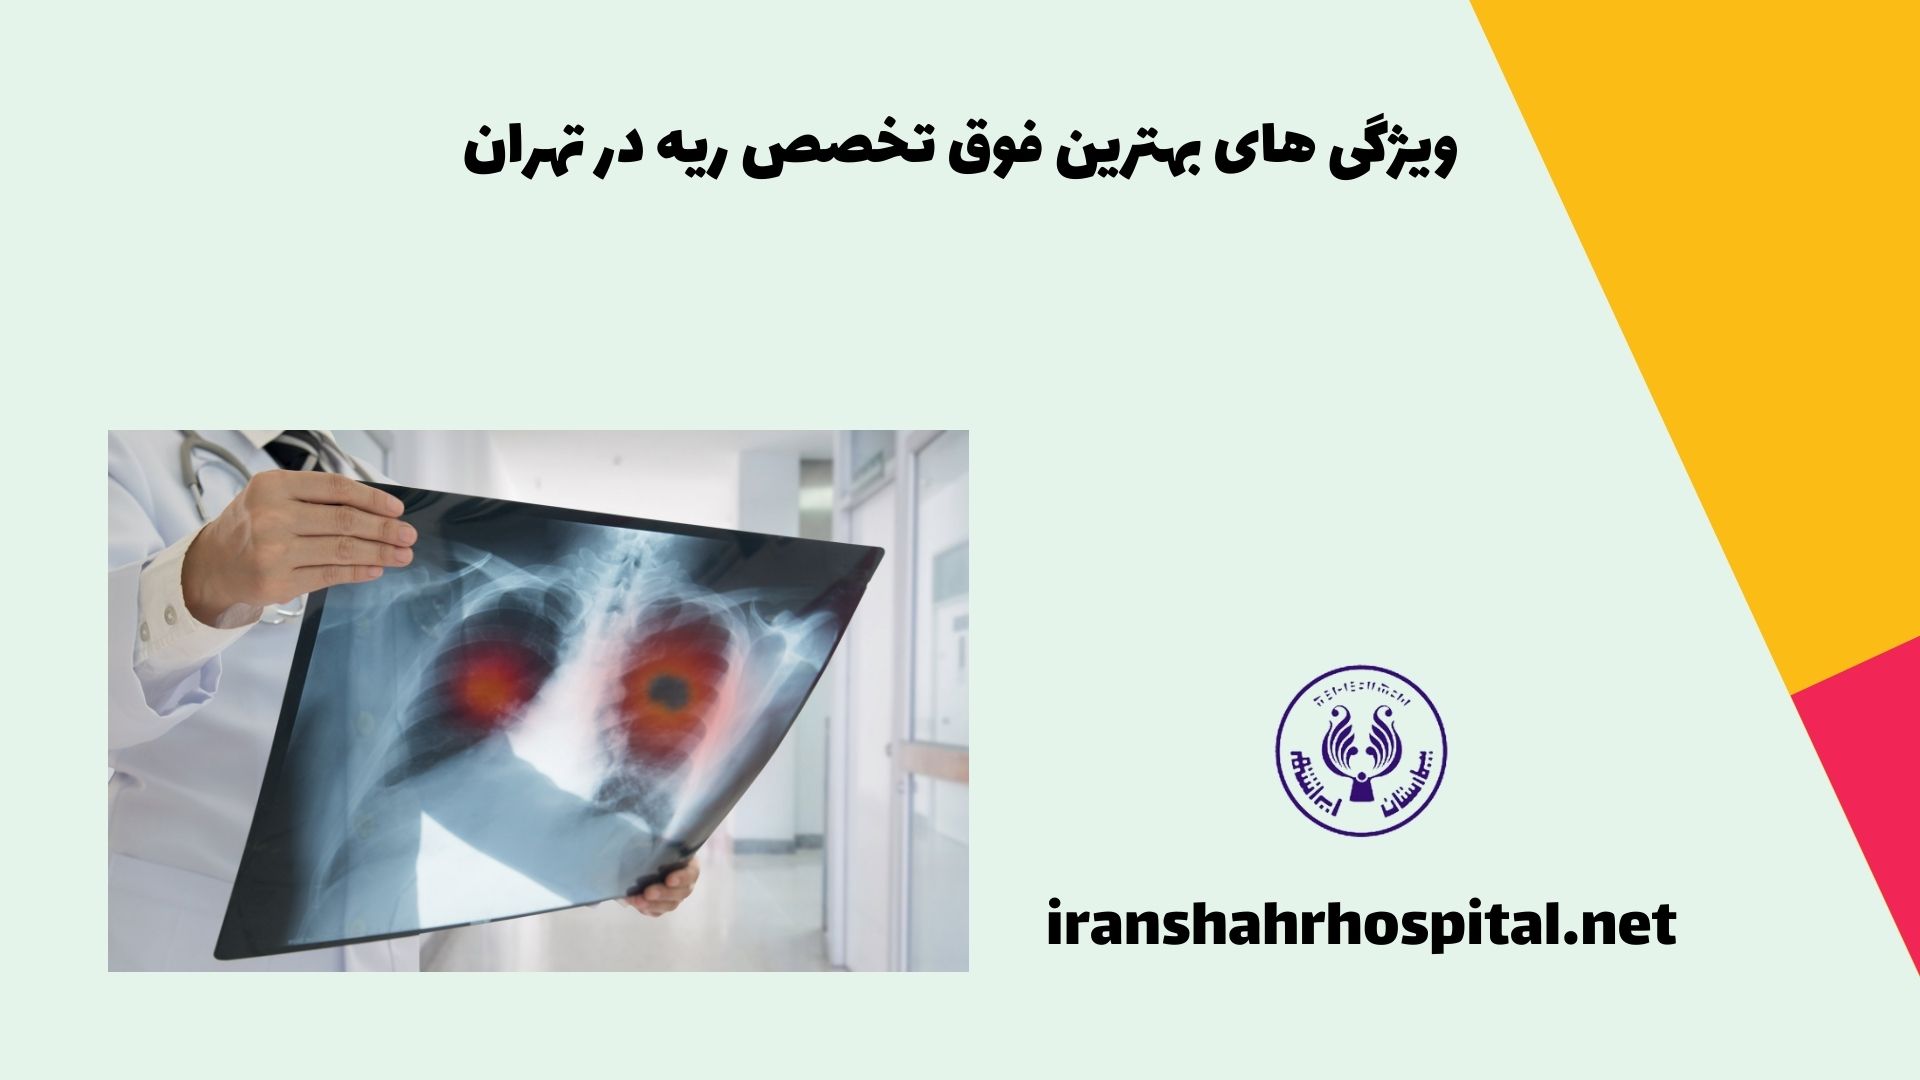 ویژگی های بهترین فوق تخصص ریه در تهران